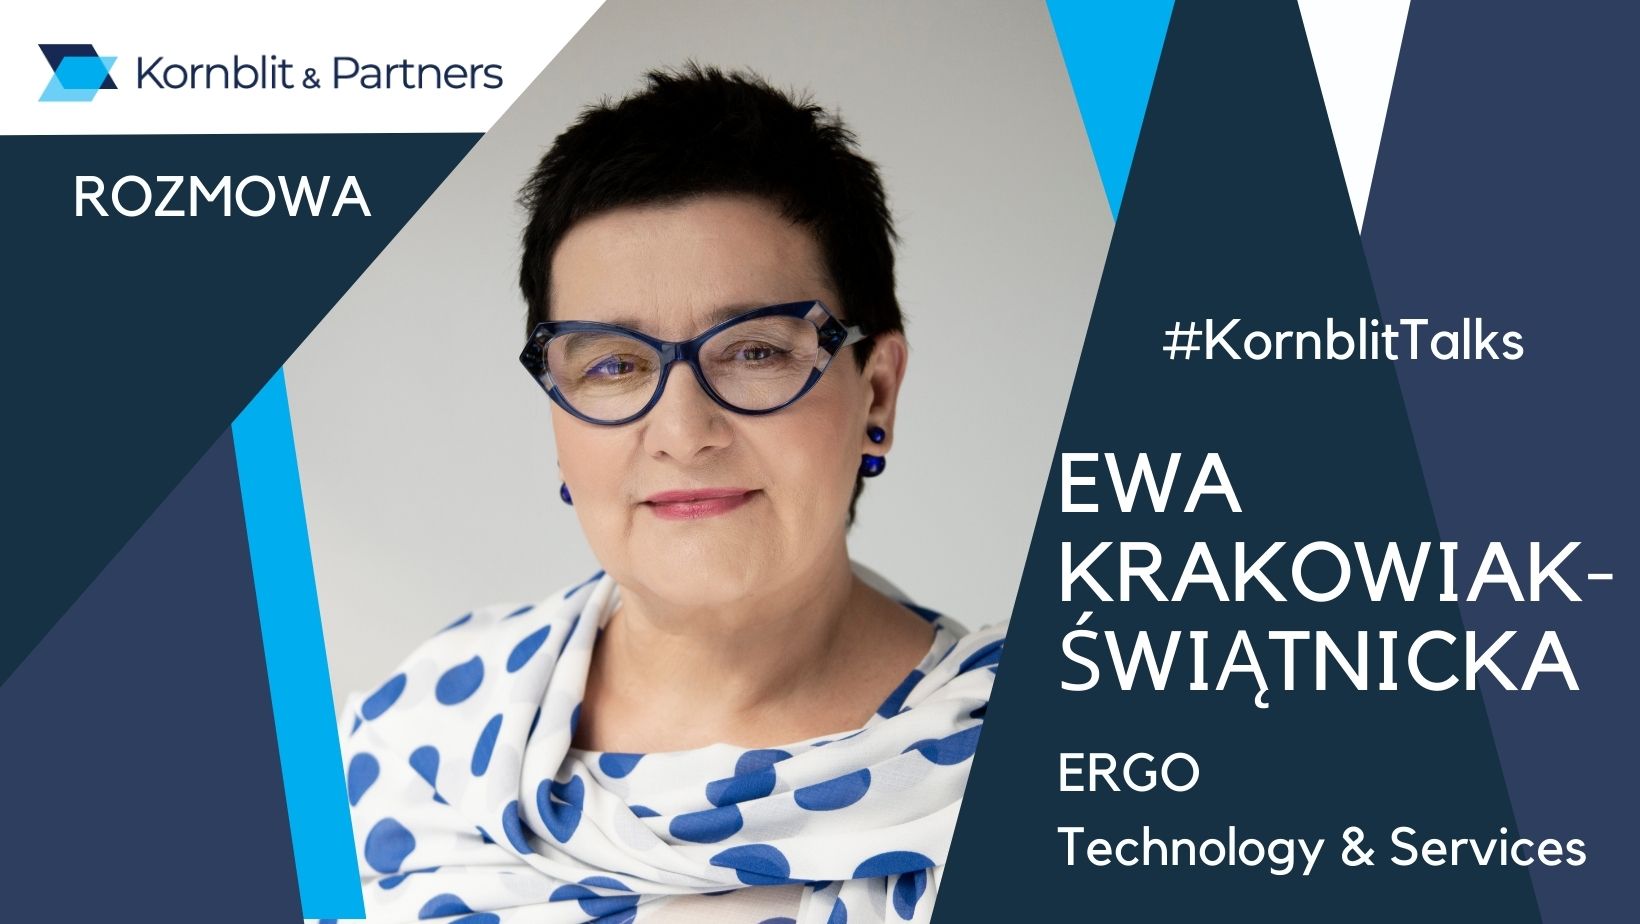 Ewa Krakowiak - Świątnicka, HR Director ERGO